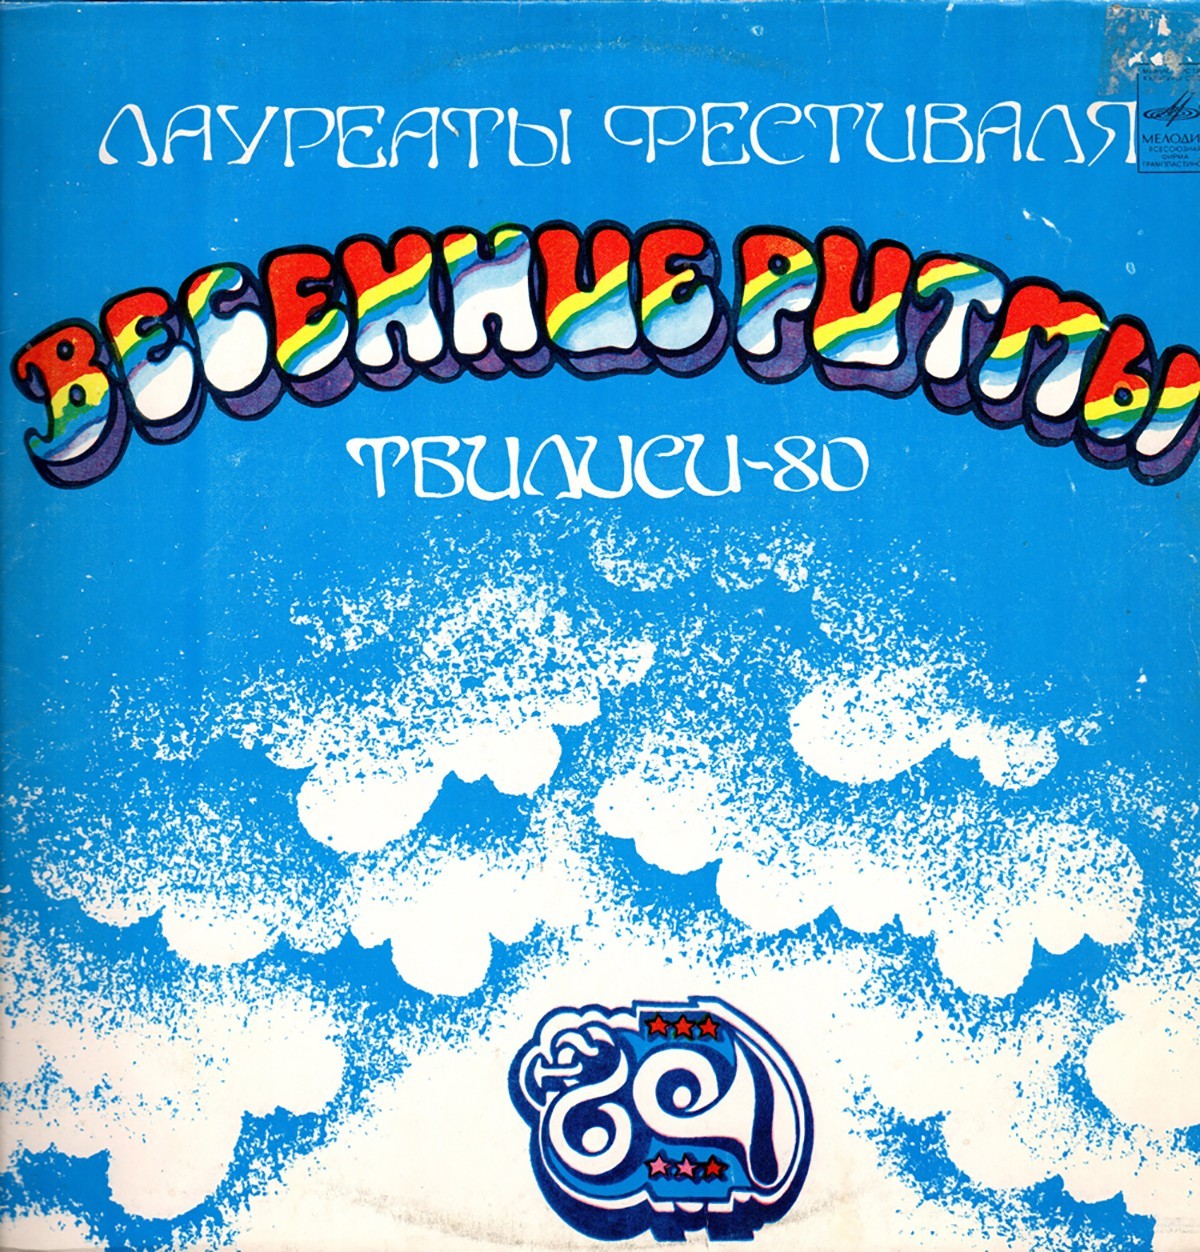 Виниловая пластинка с фестиваля «Весенние ритмы. Тбилиси-80»